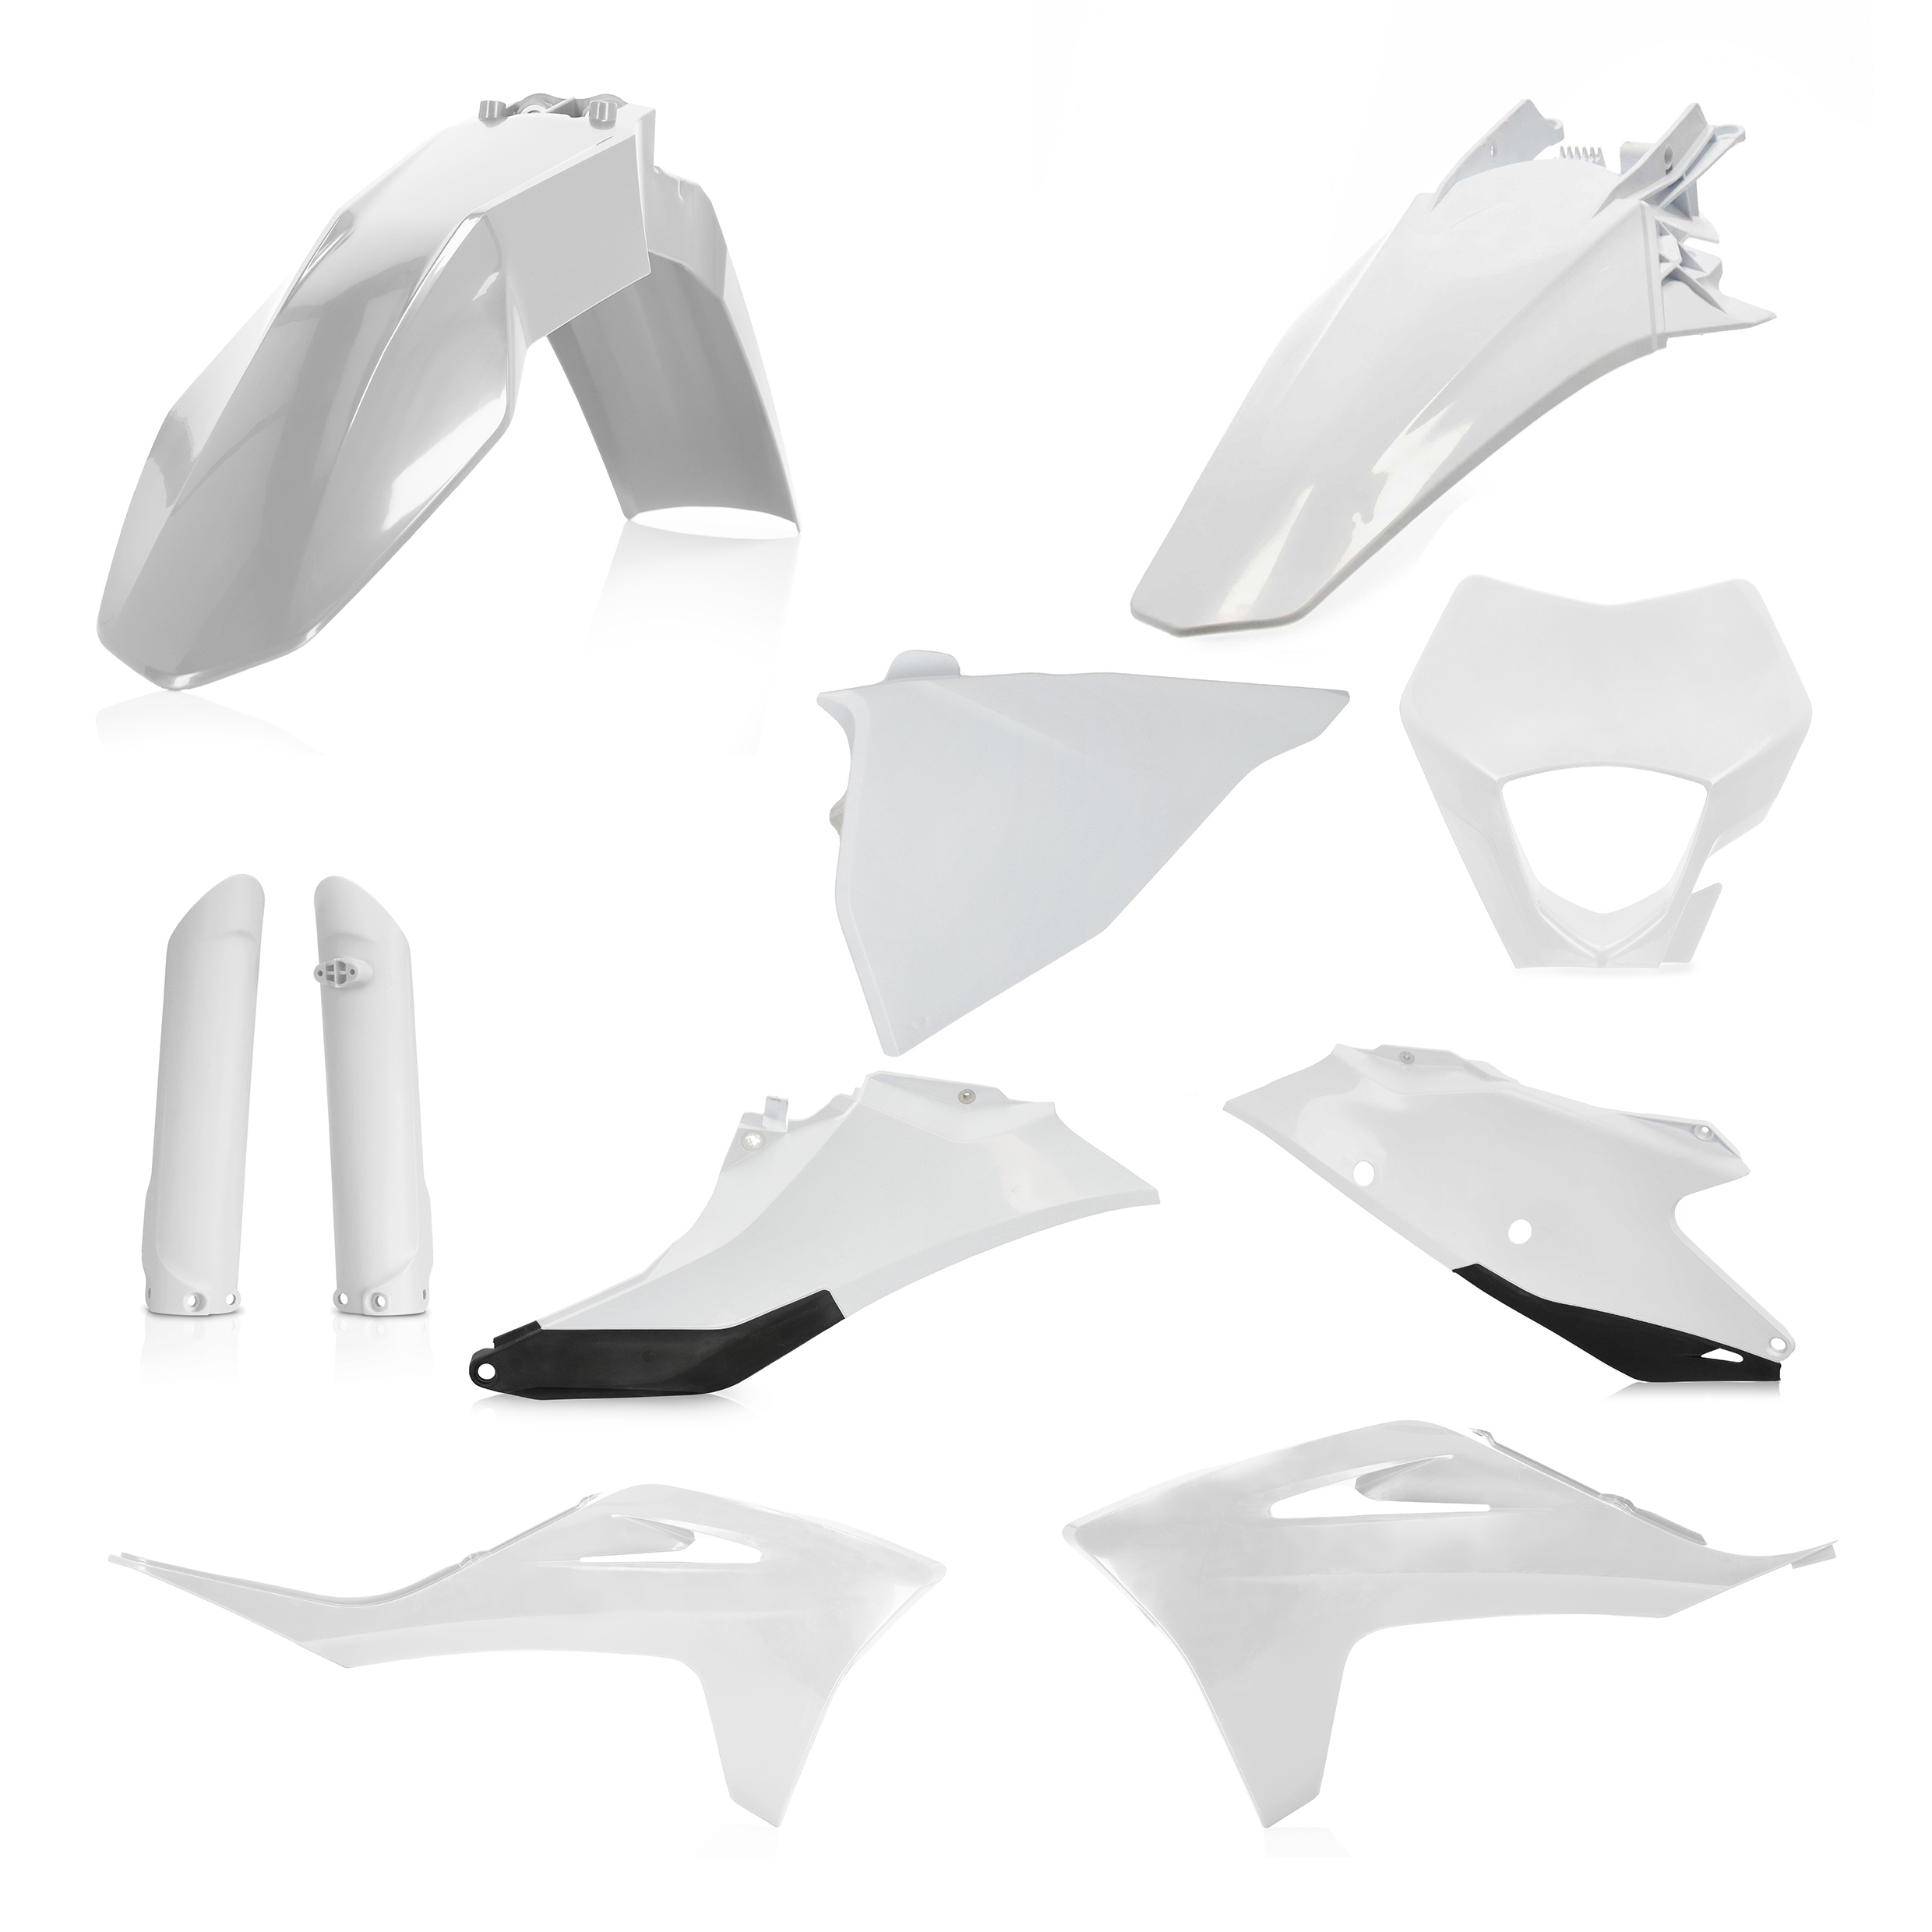 Plastikteile für deine Gas Gas EC 250 in weiß-schwarz bestehend aus Kotflügel vorn Kotflügel hinten Kühlerspoiler Seitenteile Gabelschützer Air Box Cover Lampenmaske